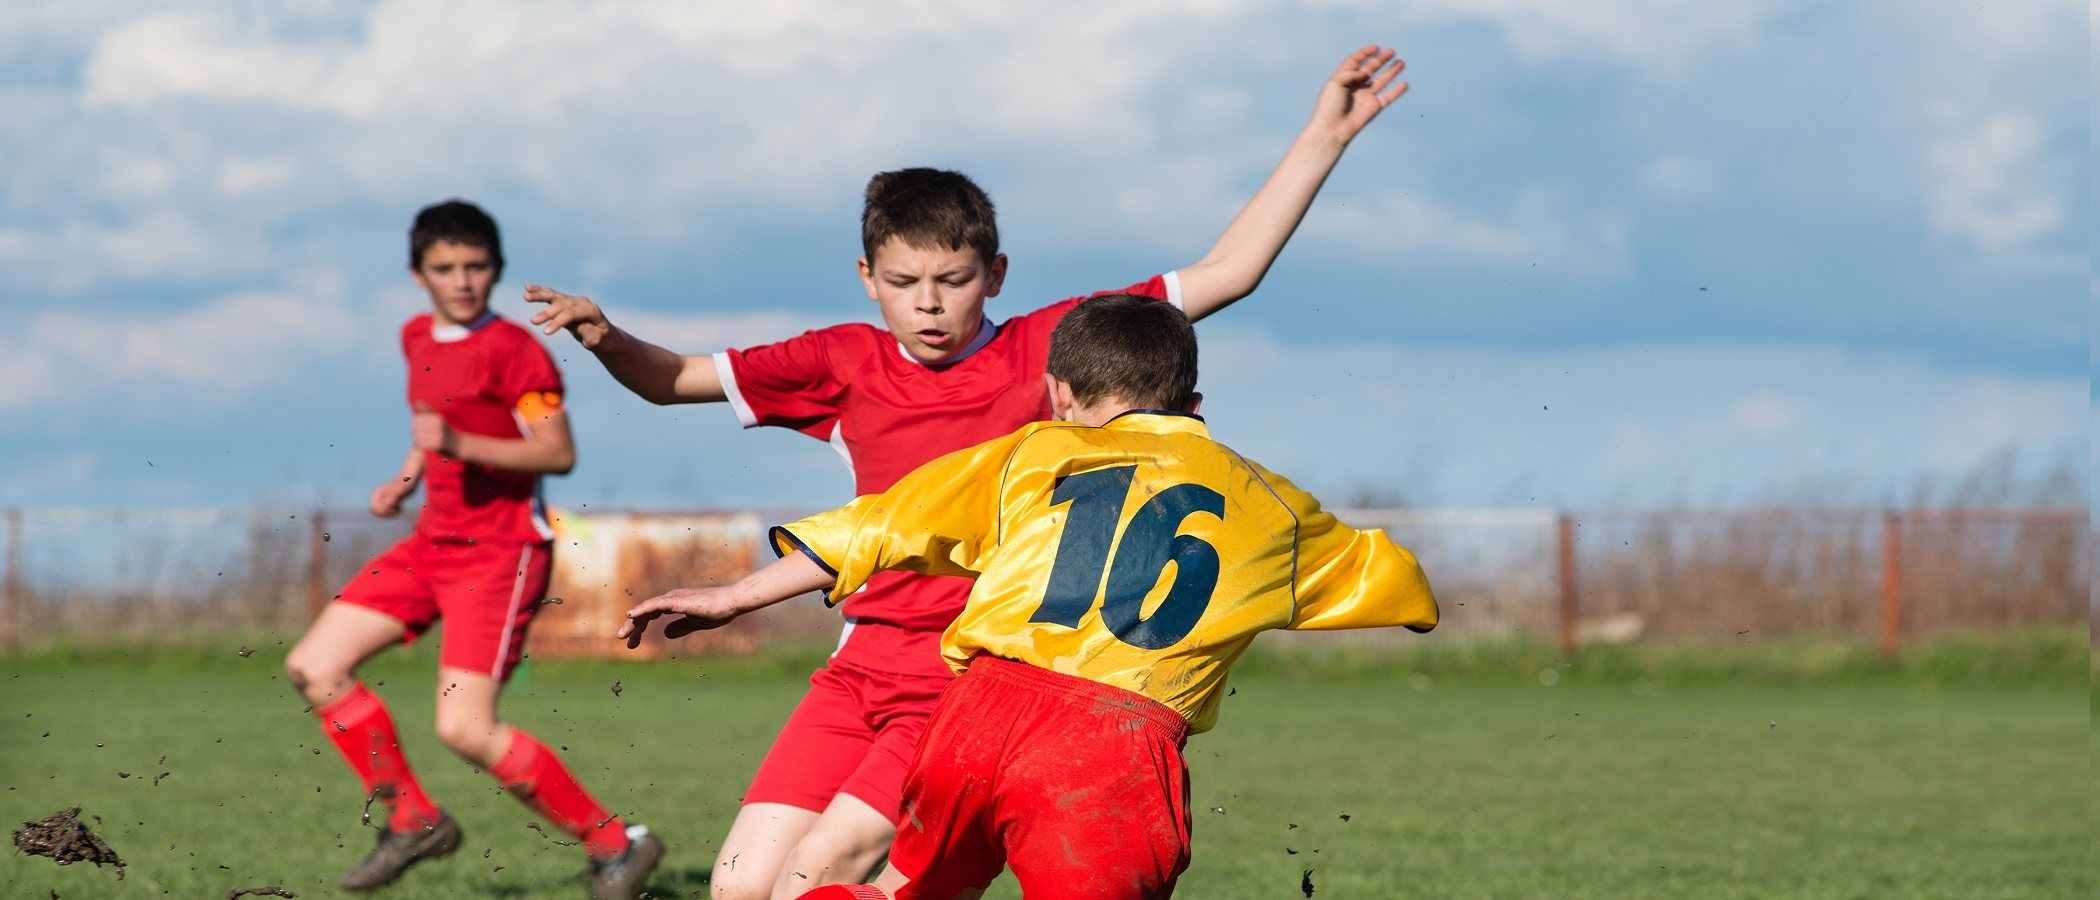 La relación entre el deporte y la autoestima en los niños